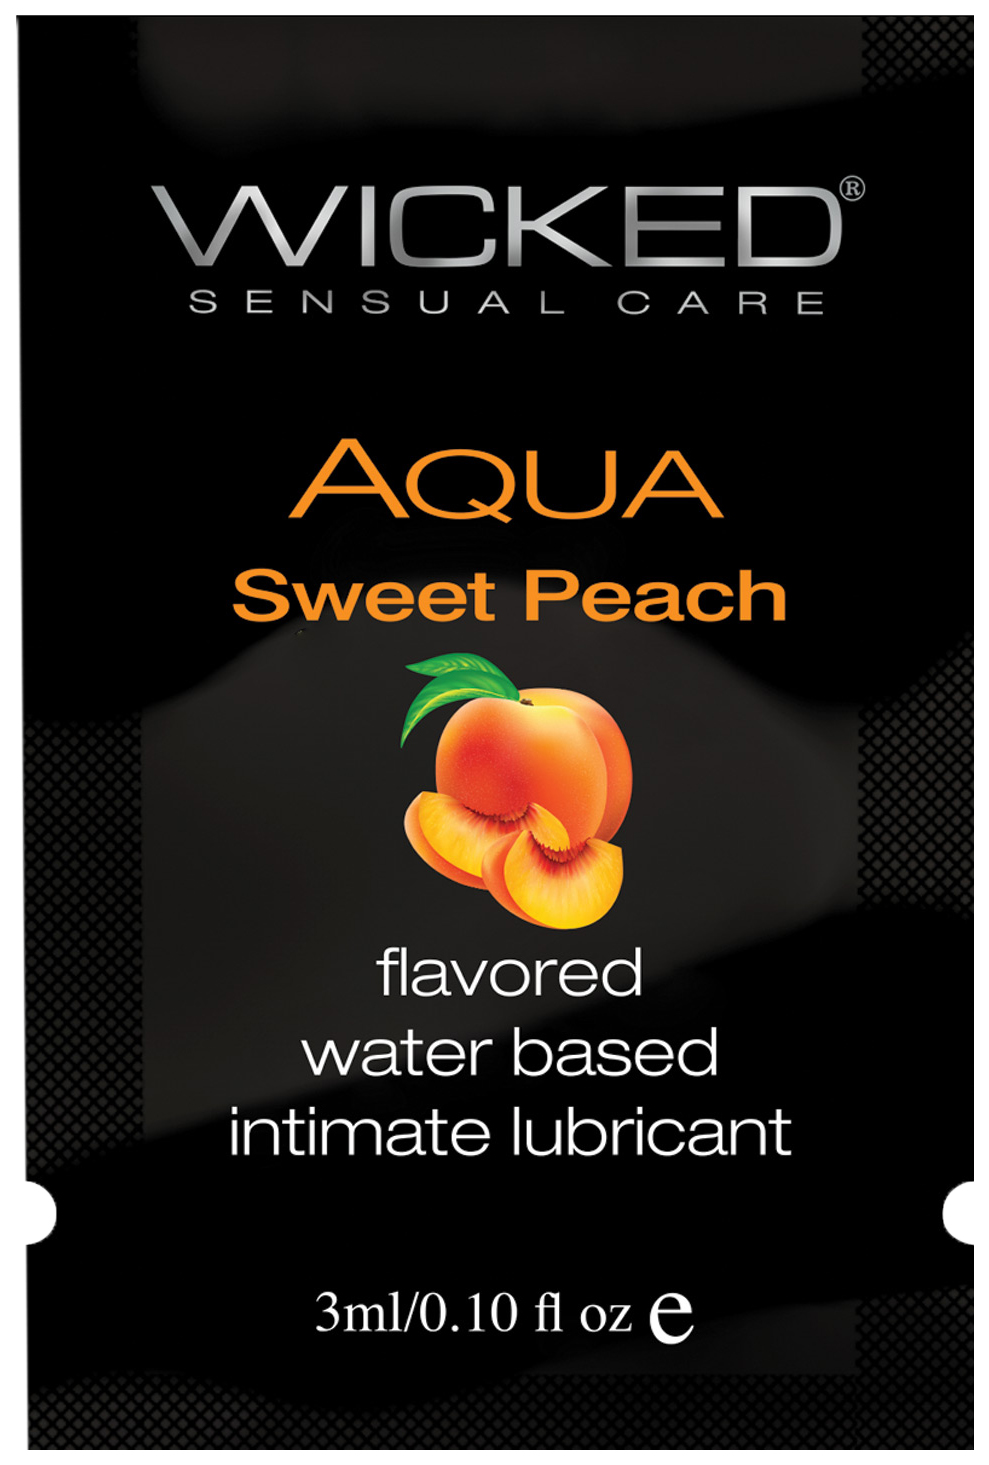 Гель-лубрикант Wicked Aqua на водной основе спелый персик 3 мл  - купить